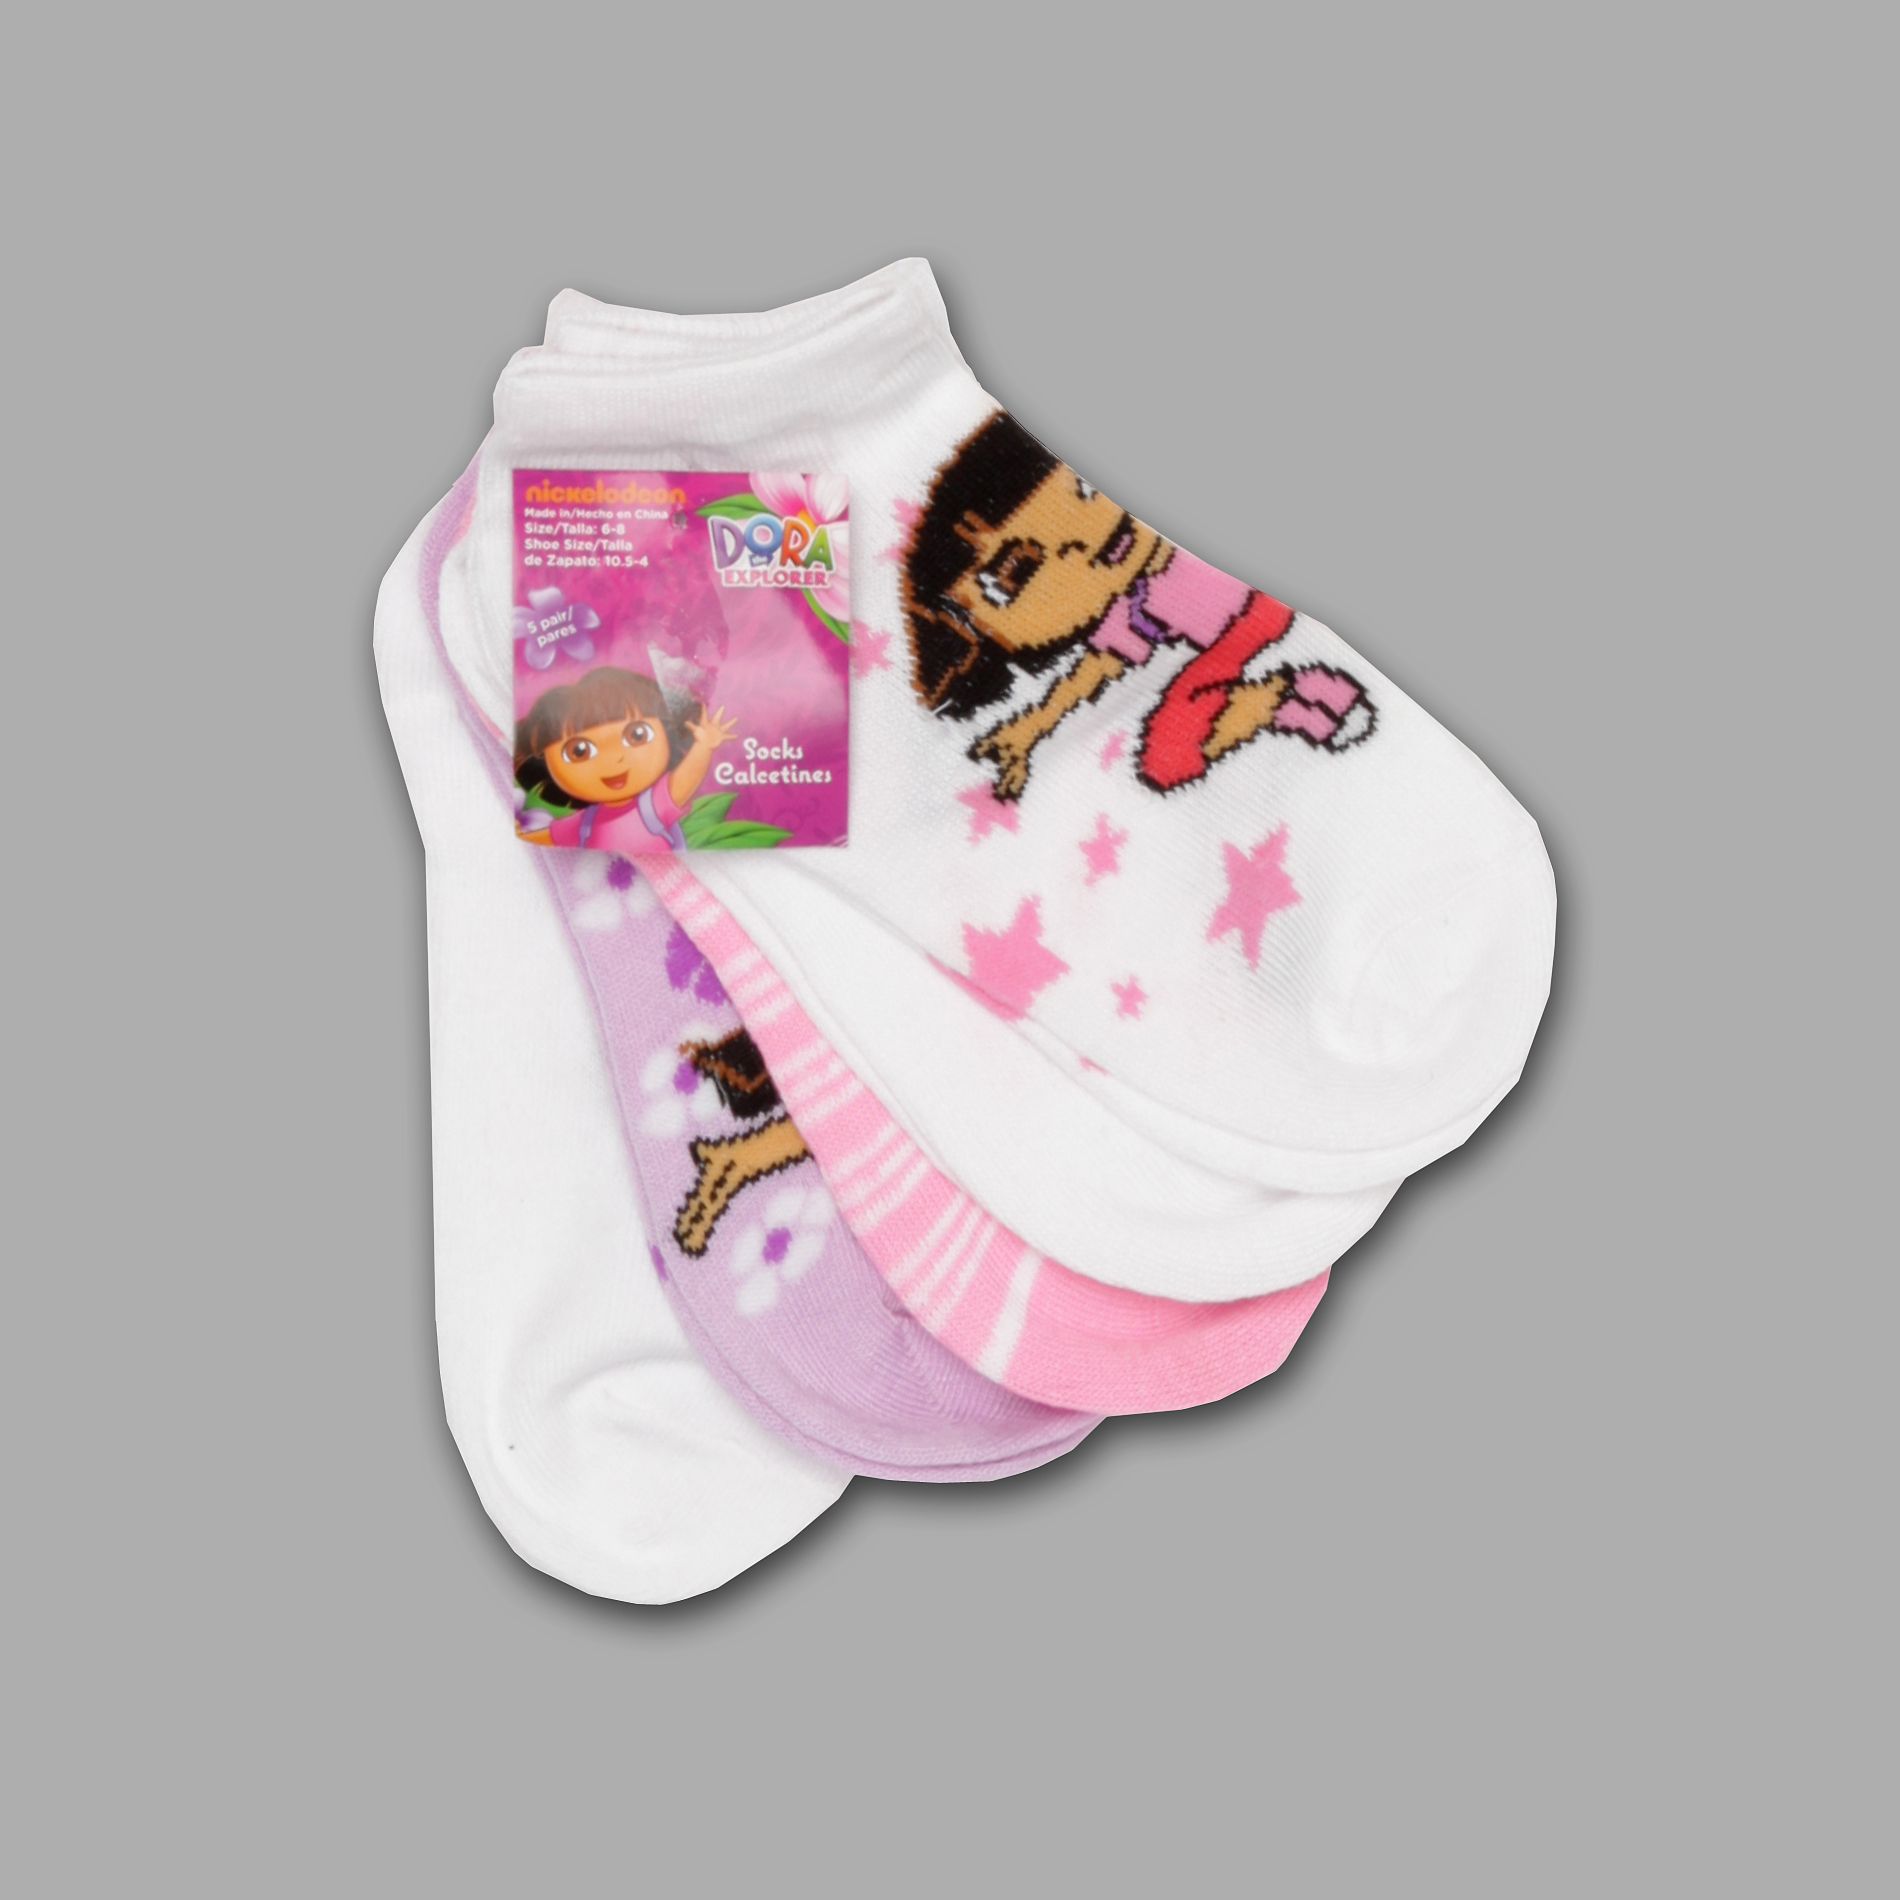 Nickelodeon Infant & Toddler Girl&#8217;s Socks 5 Pack Dora the Explorer